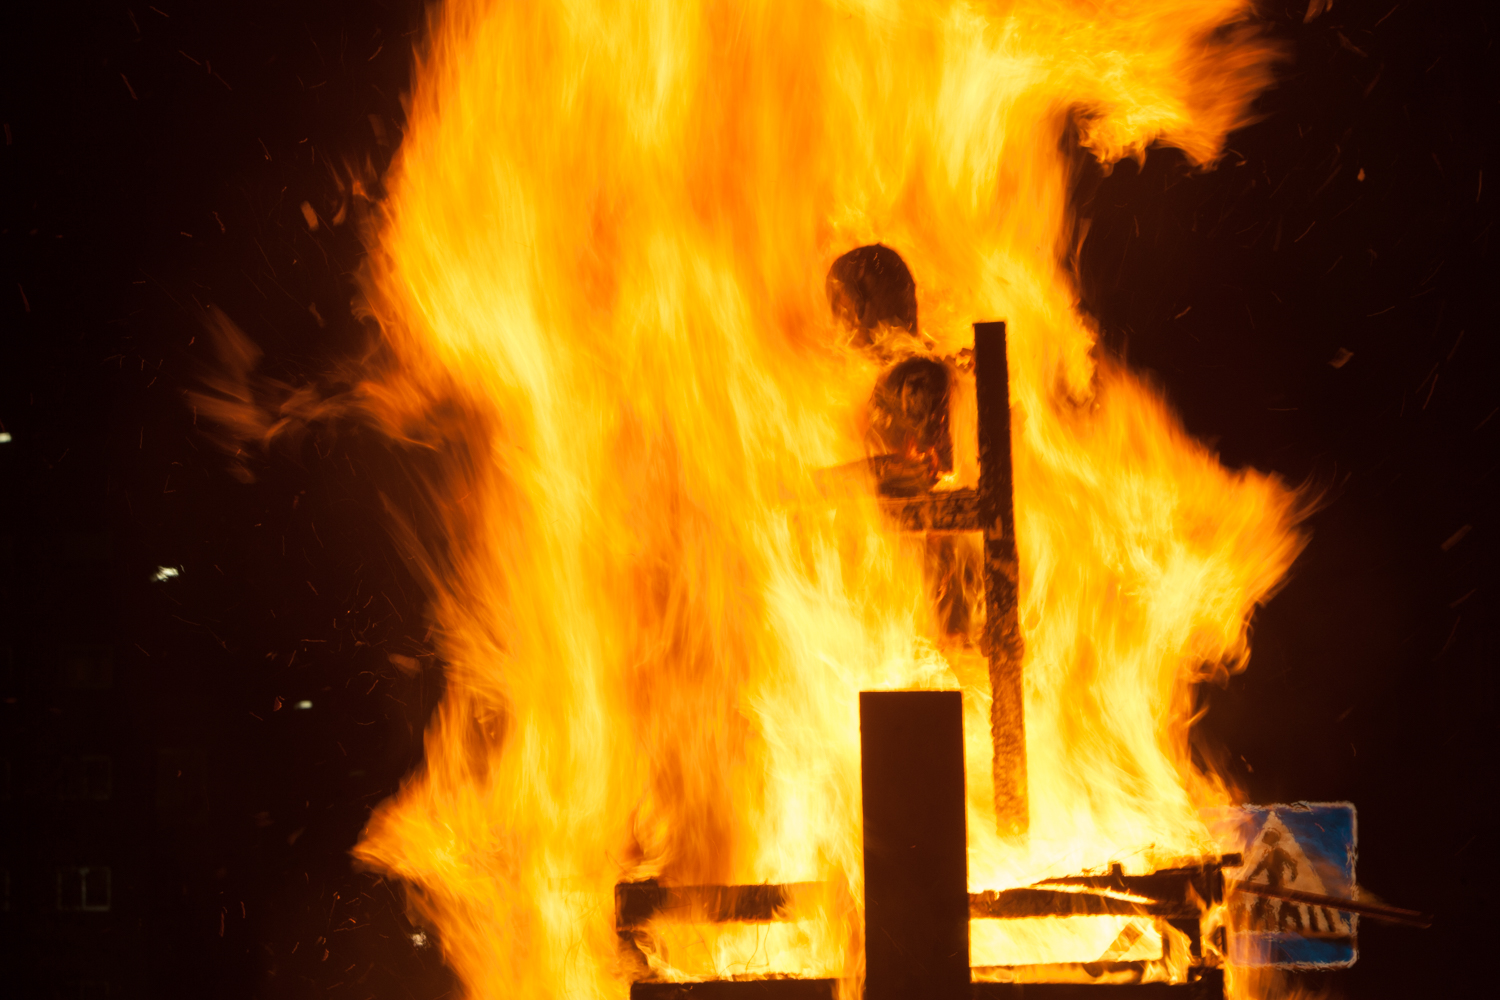 Fiesta de las candelas, tradicional quema del Marimanta, muñeco que representa a Jordi Pujol y Artur Mas. Oto